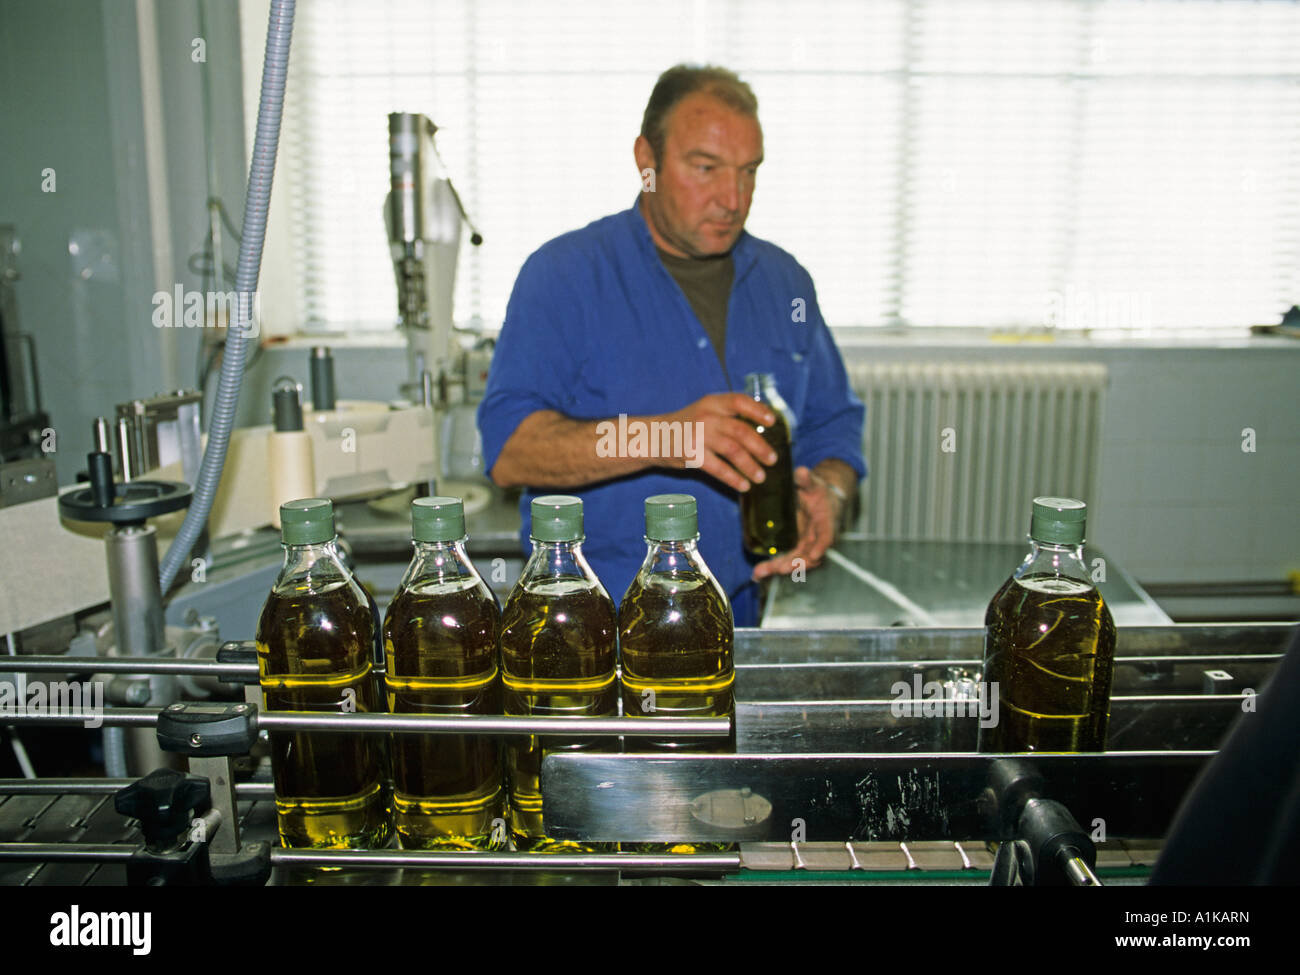 Remplissage des travailleurs de l'huile d'olive dans des bouteilles, province de Jaén, Andalousie, Espagne, Europe Banque D'Images